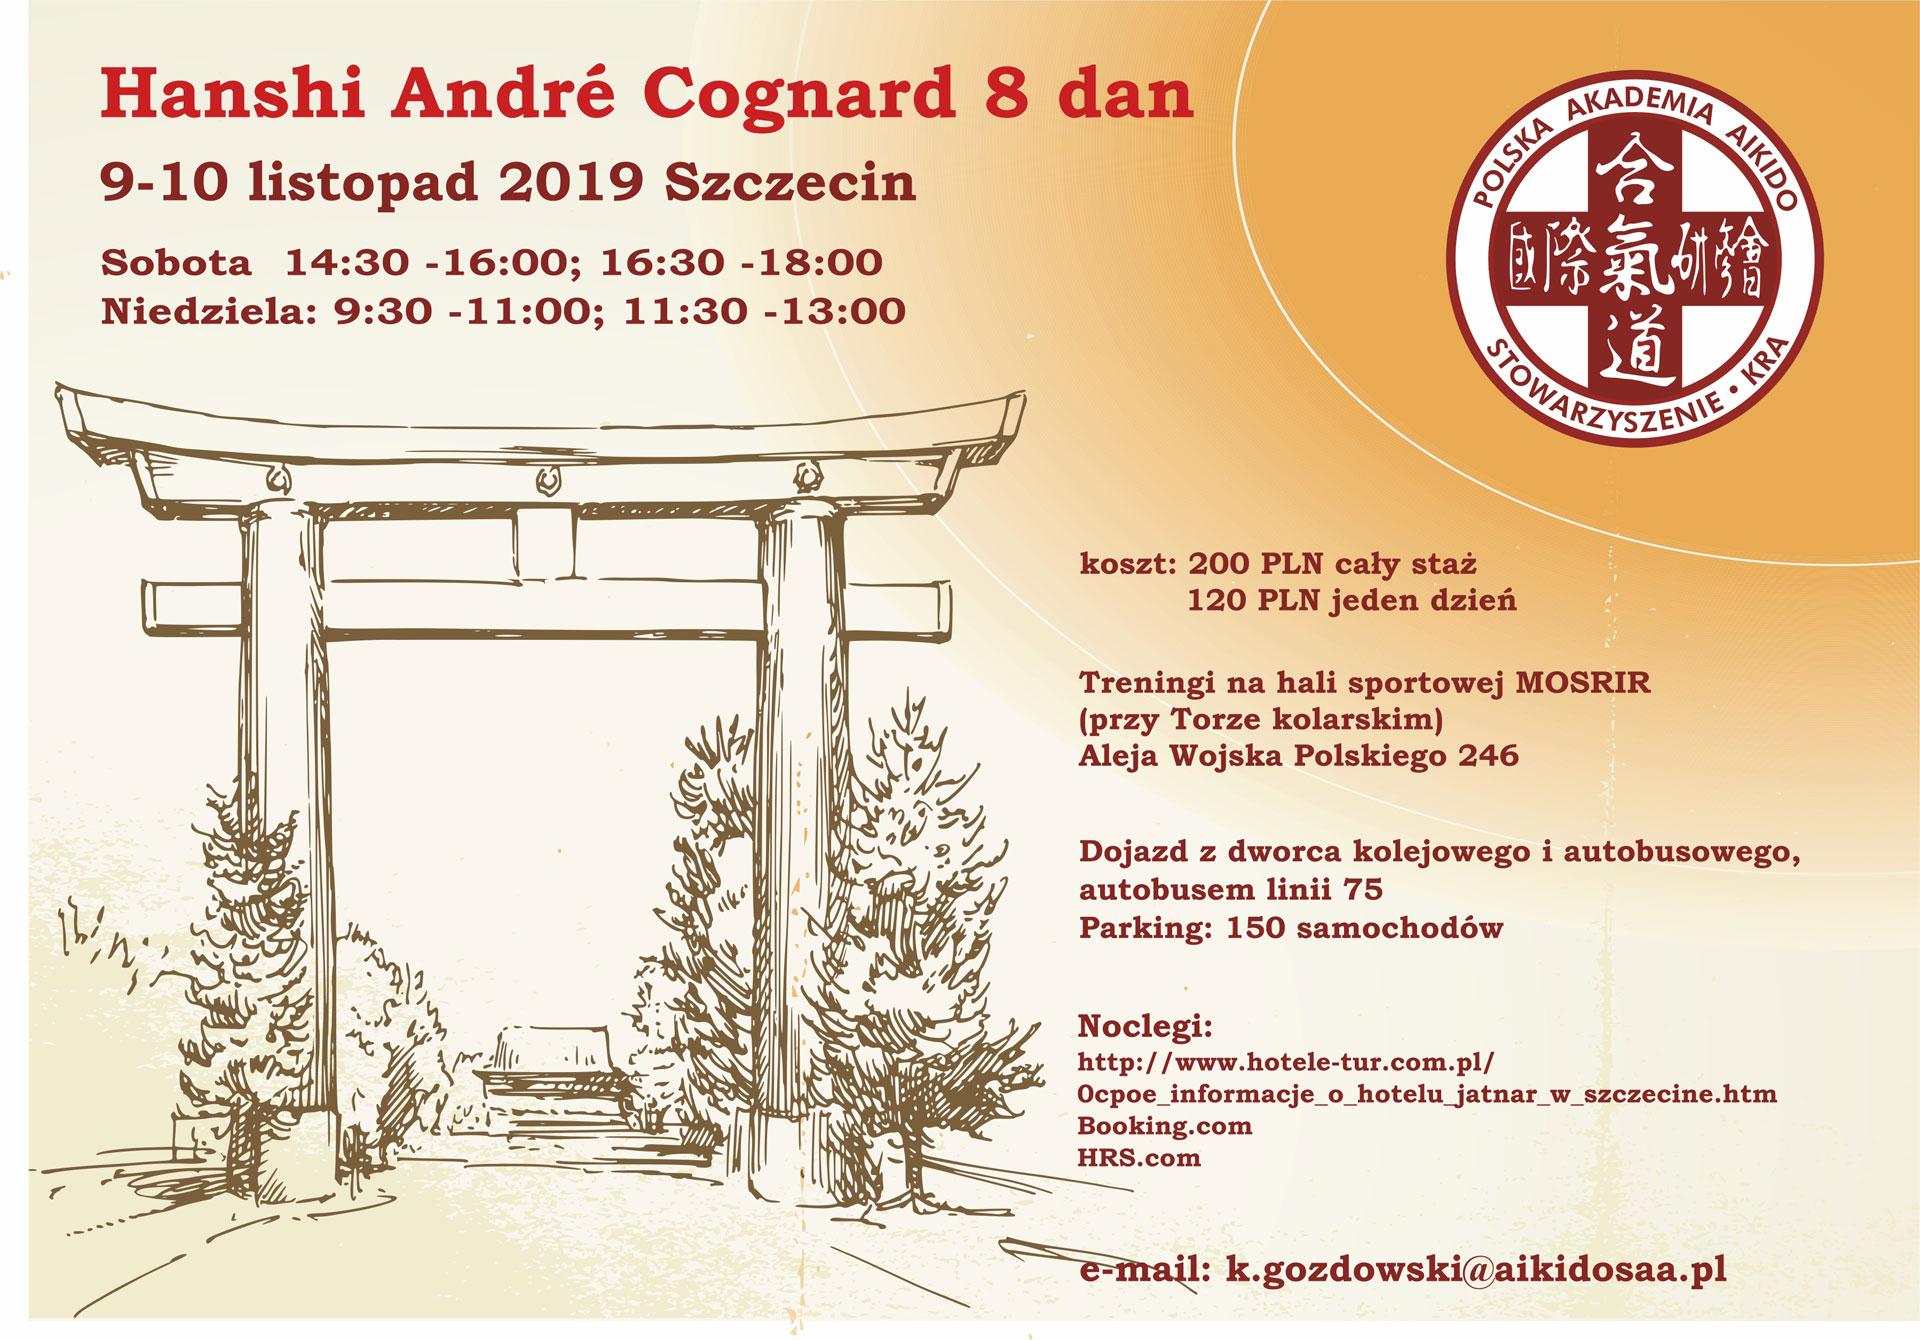 Seminarium z Hanshi Andre Cognard 8dan